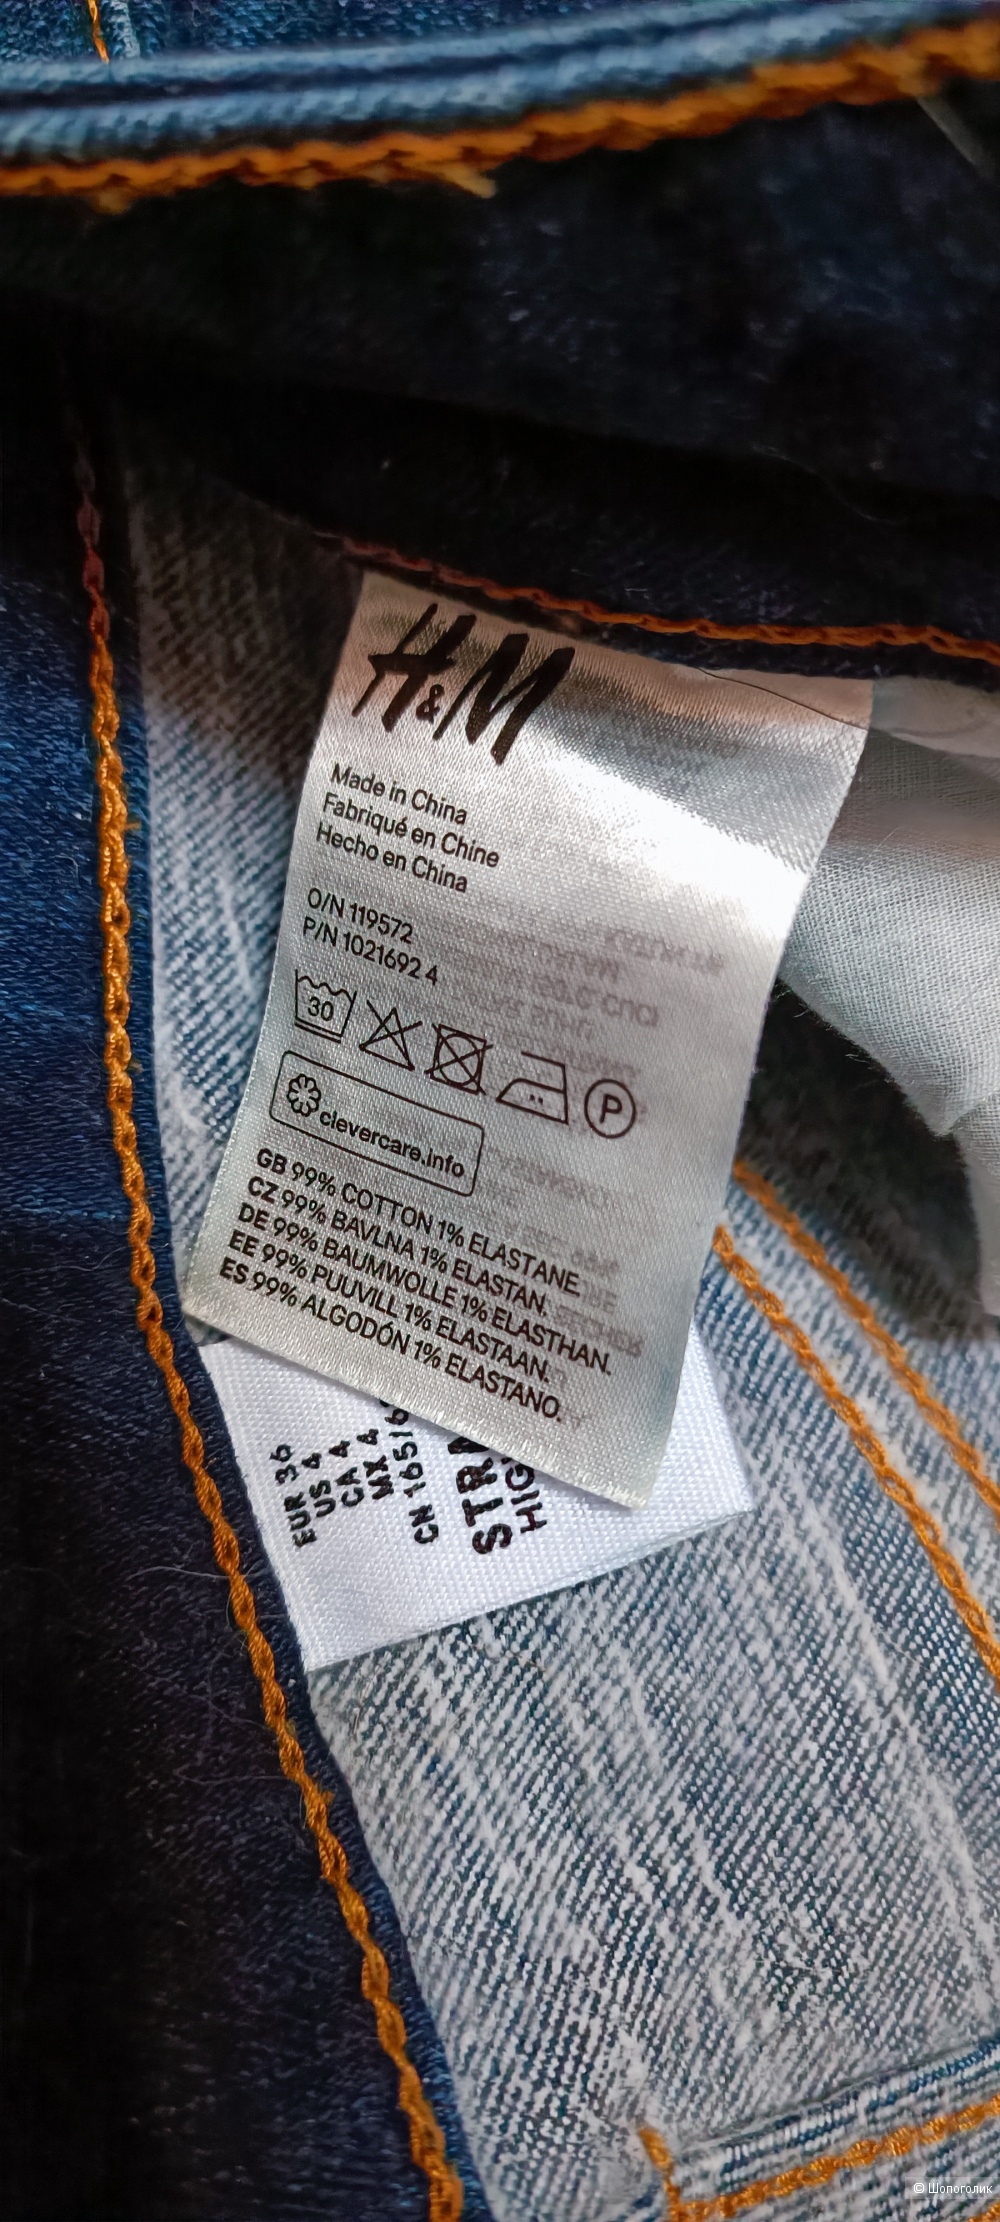 Теплые джинсы H&M, 36 (большемерят)